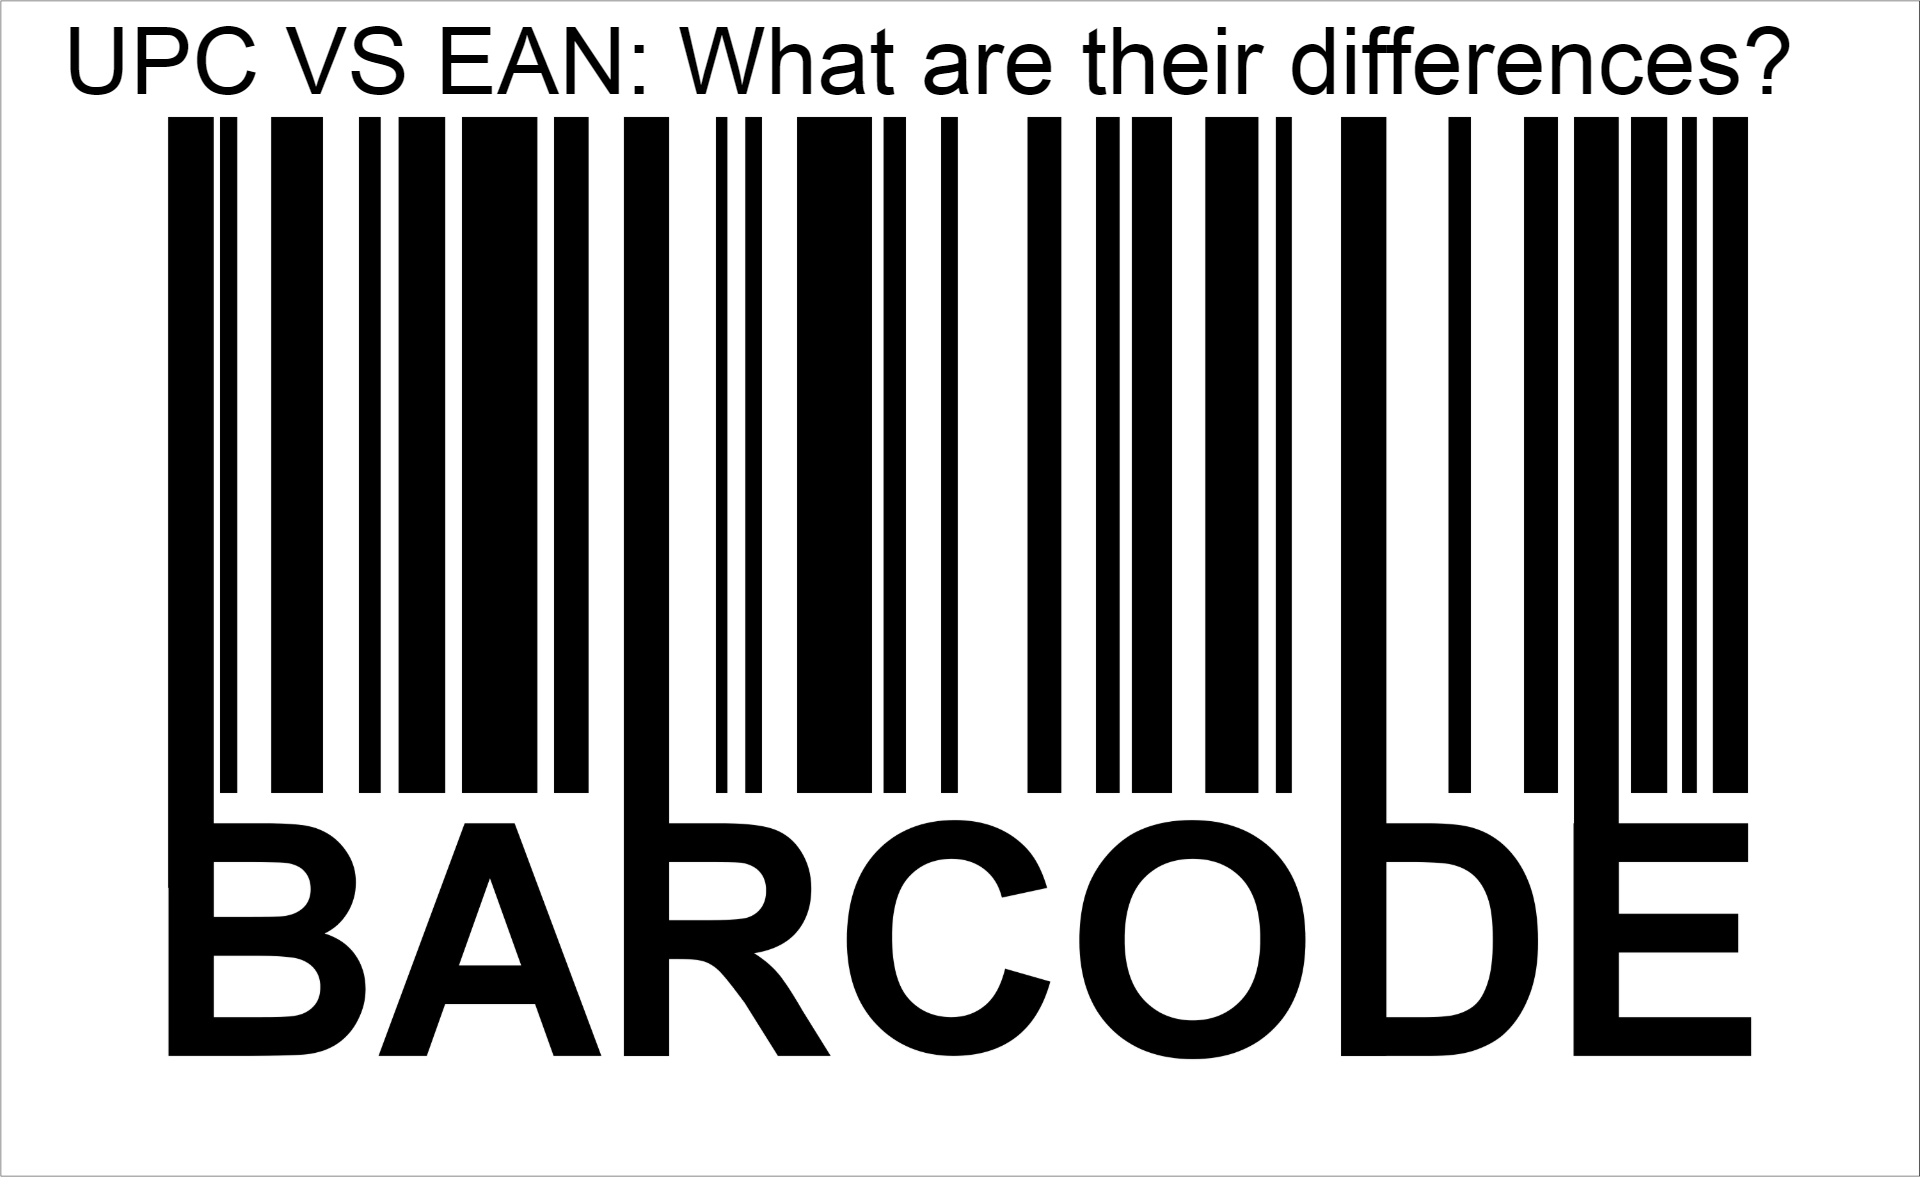 Barcode glossary